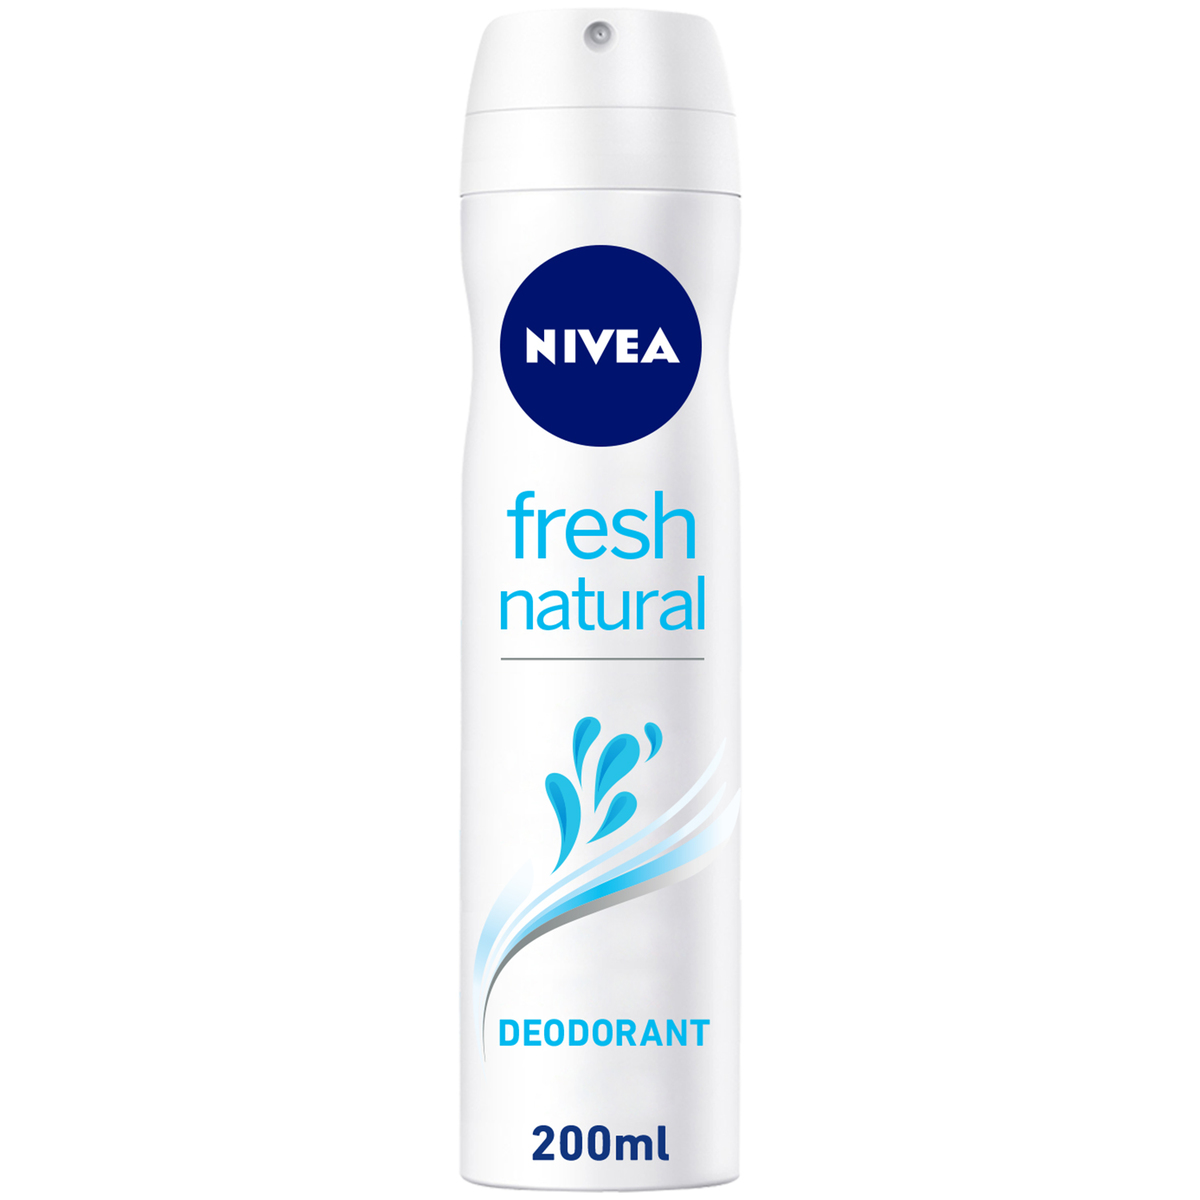 Nivea Deodorant Fresh Natural Ocean Extracts 200ml